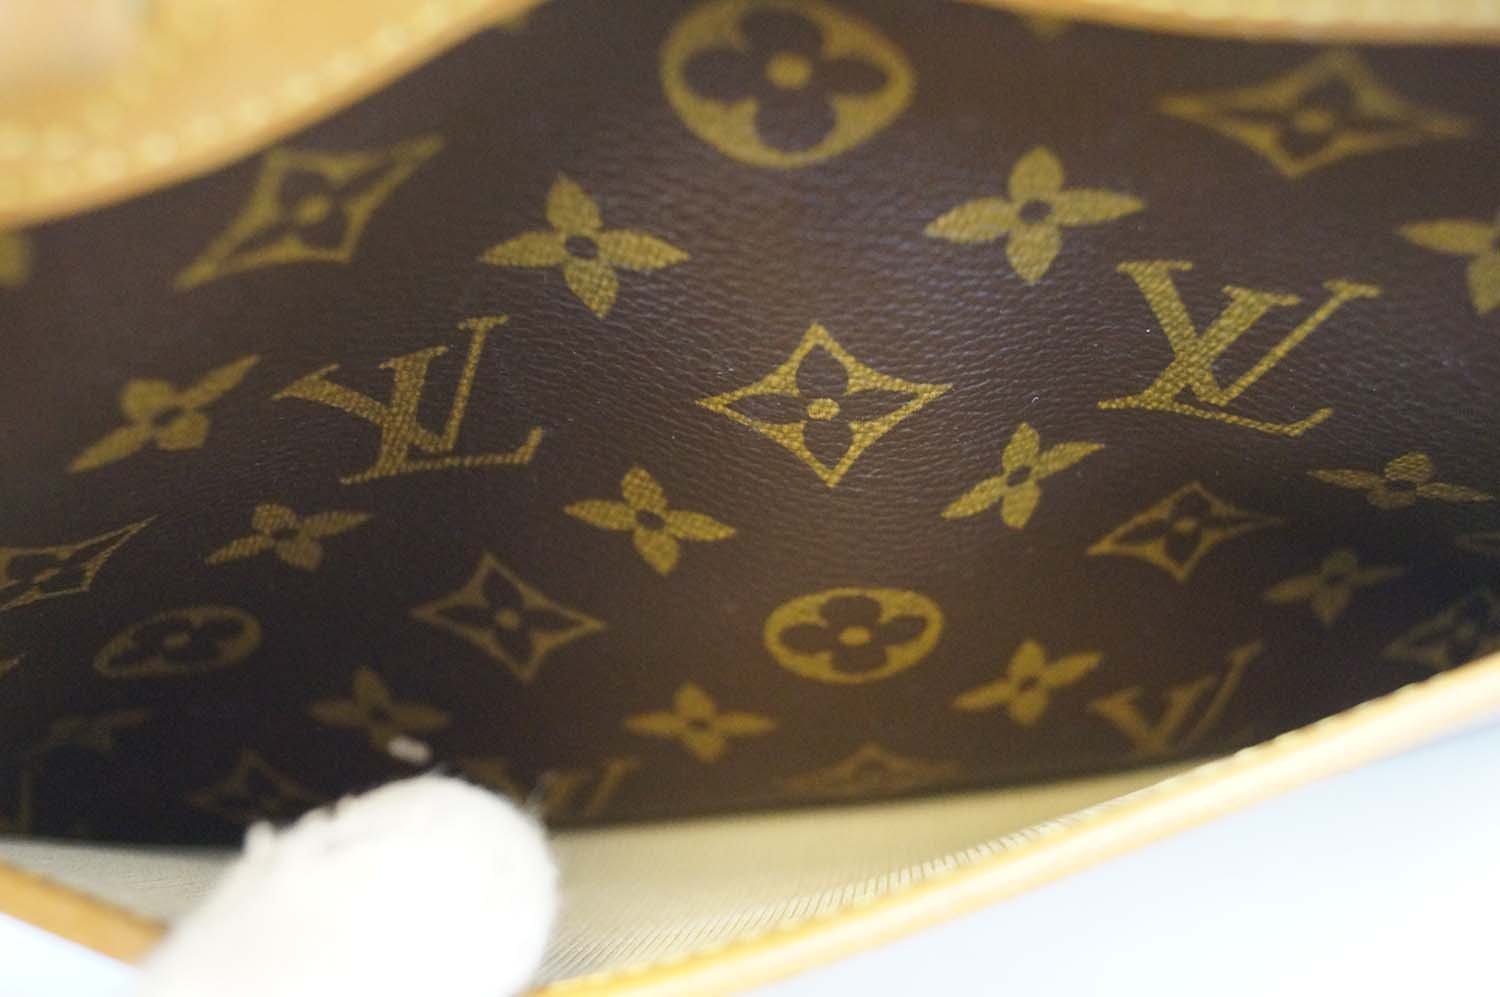 Louis Vuitton Trouville Monogram Ghw – ValiseLaBel